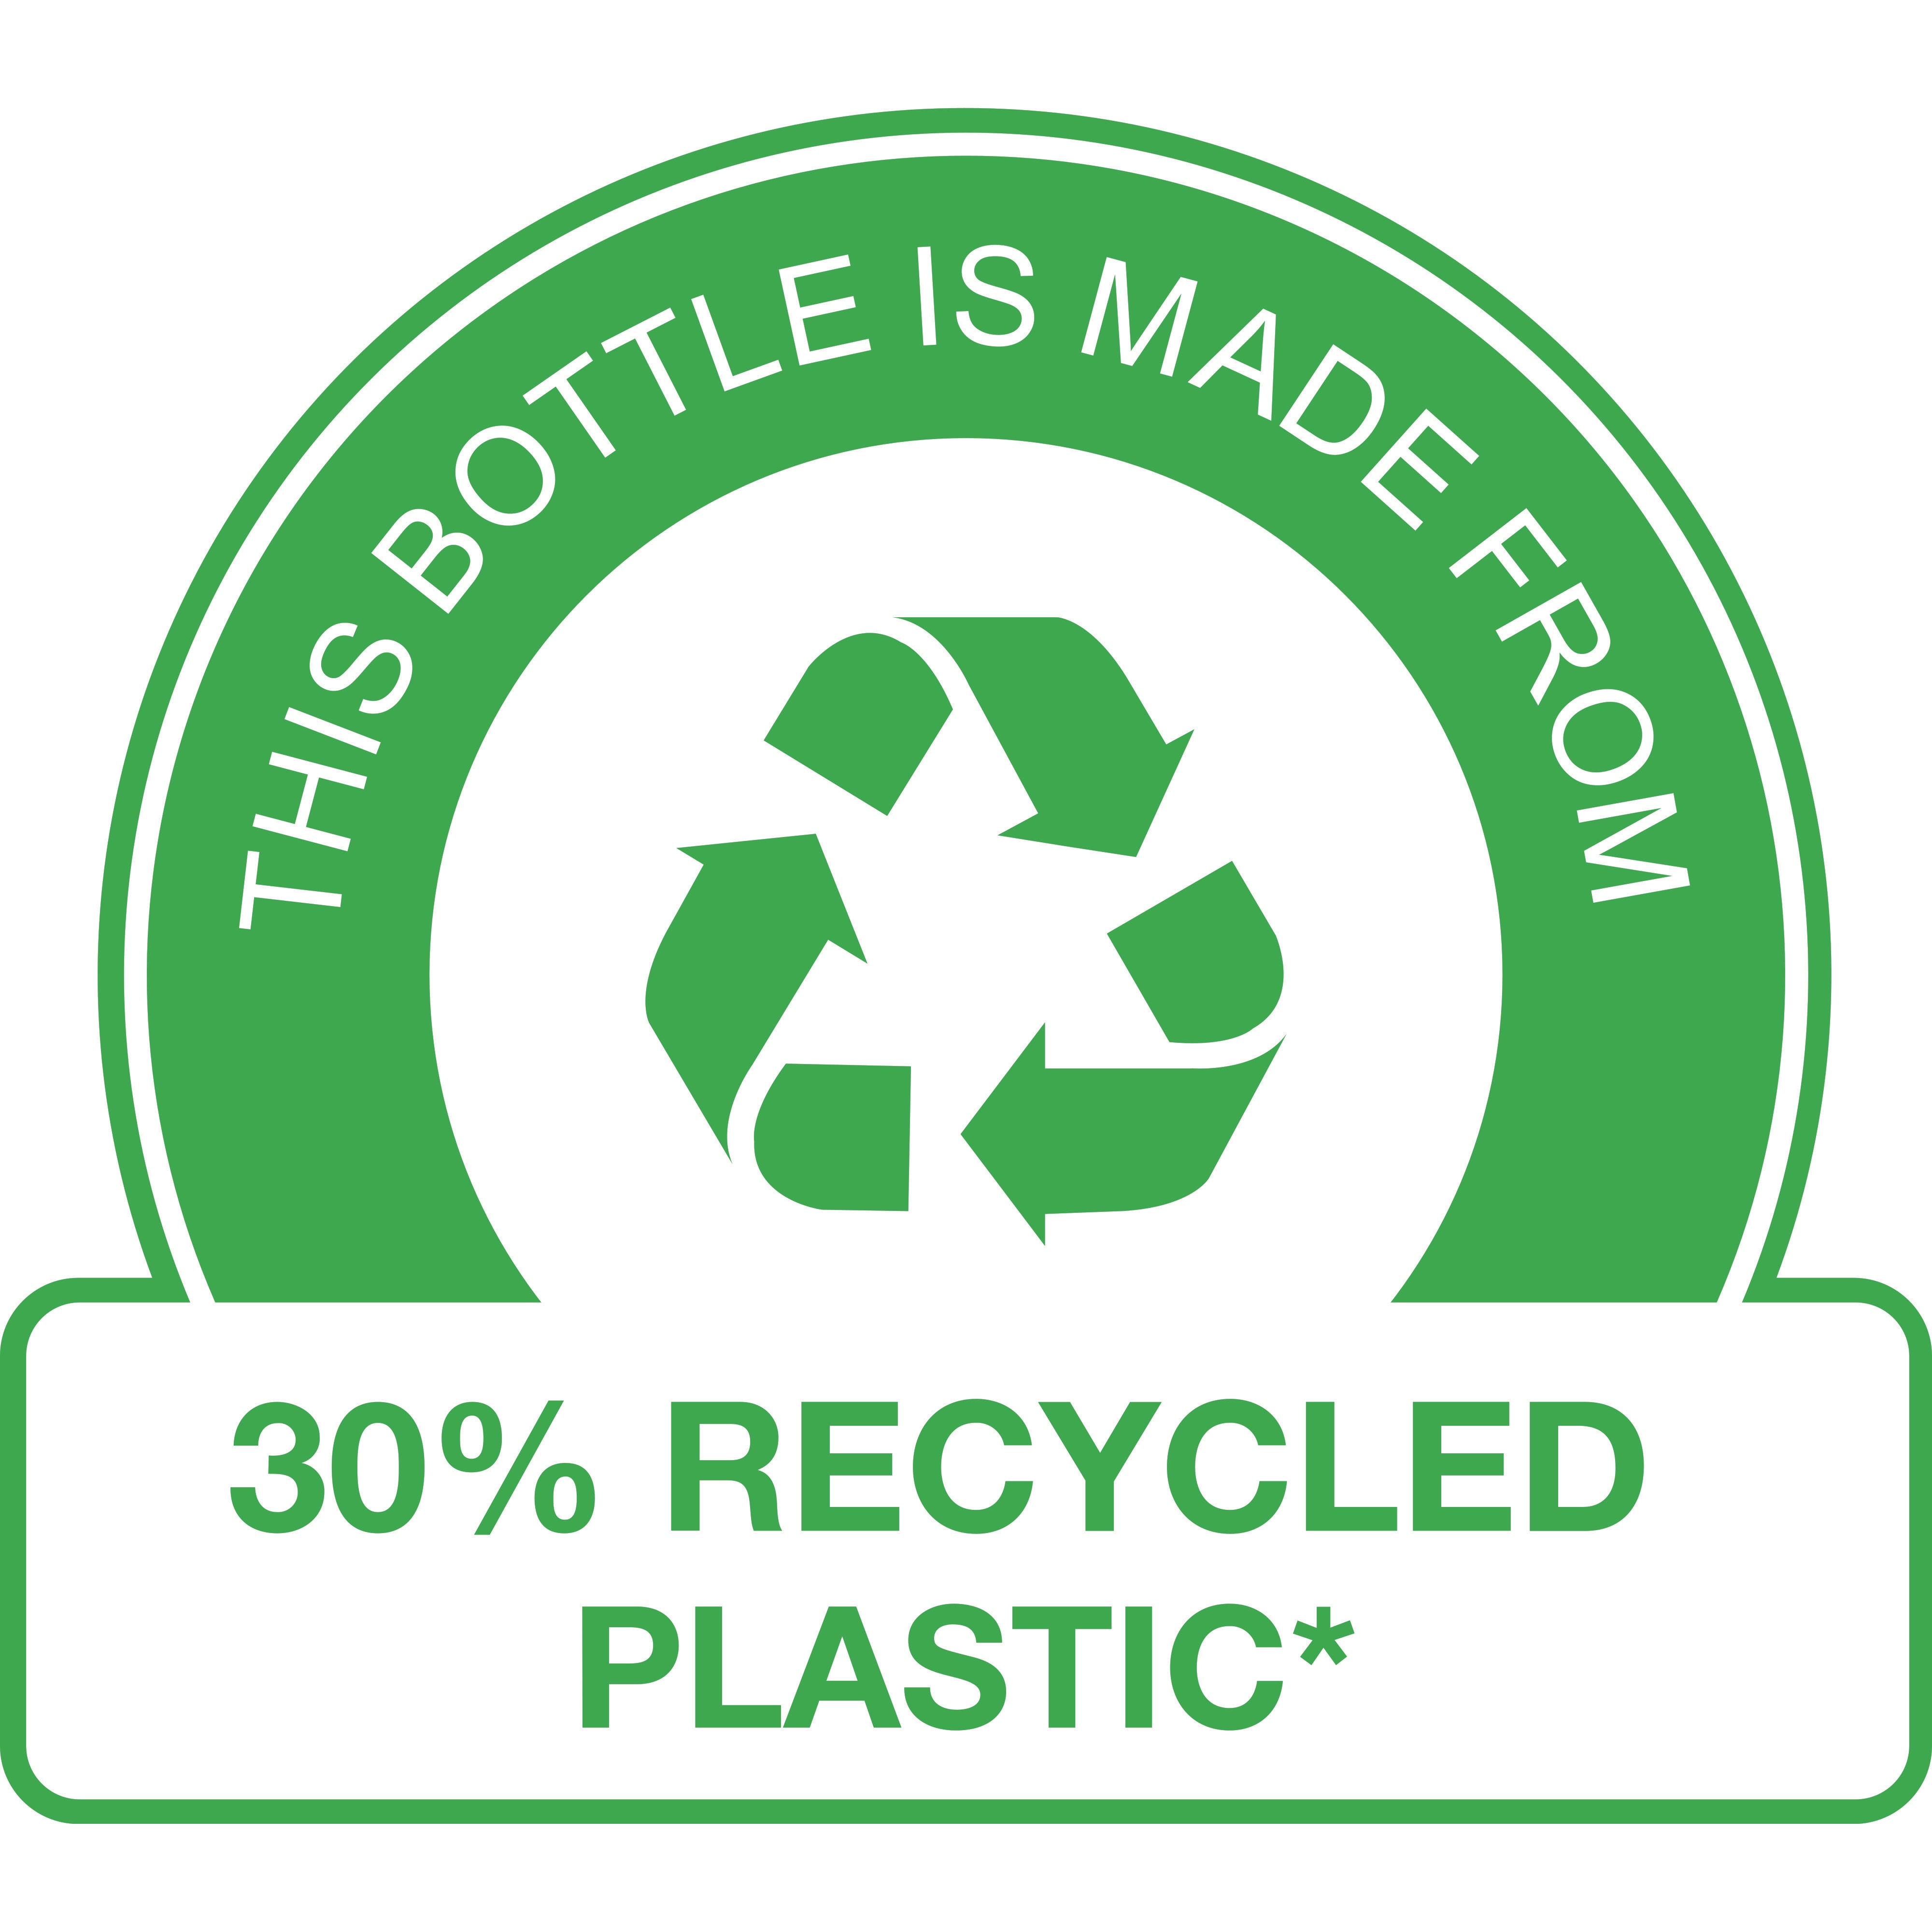 Αυτό το μπουκάλι είναι κατασκευασμένο από 30% ανακυκλωμένο πλαστικό* 

(*εκτός της αντλίας)